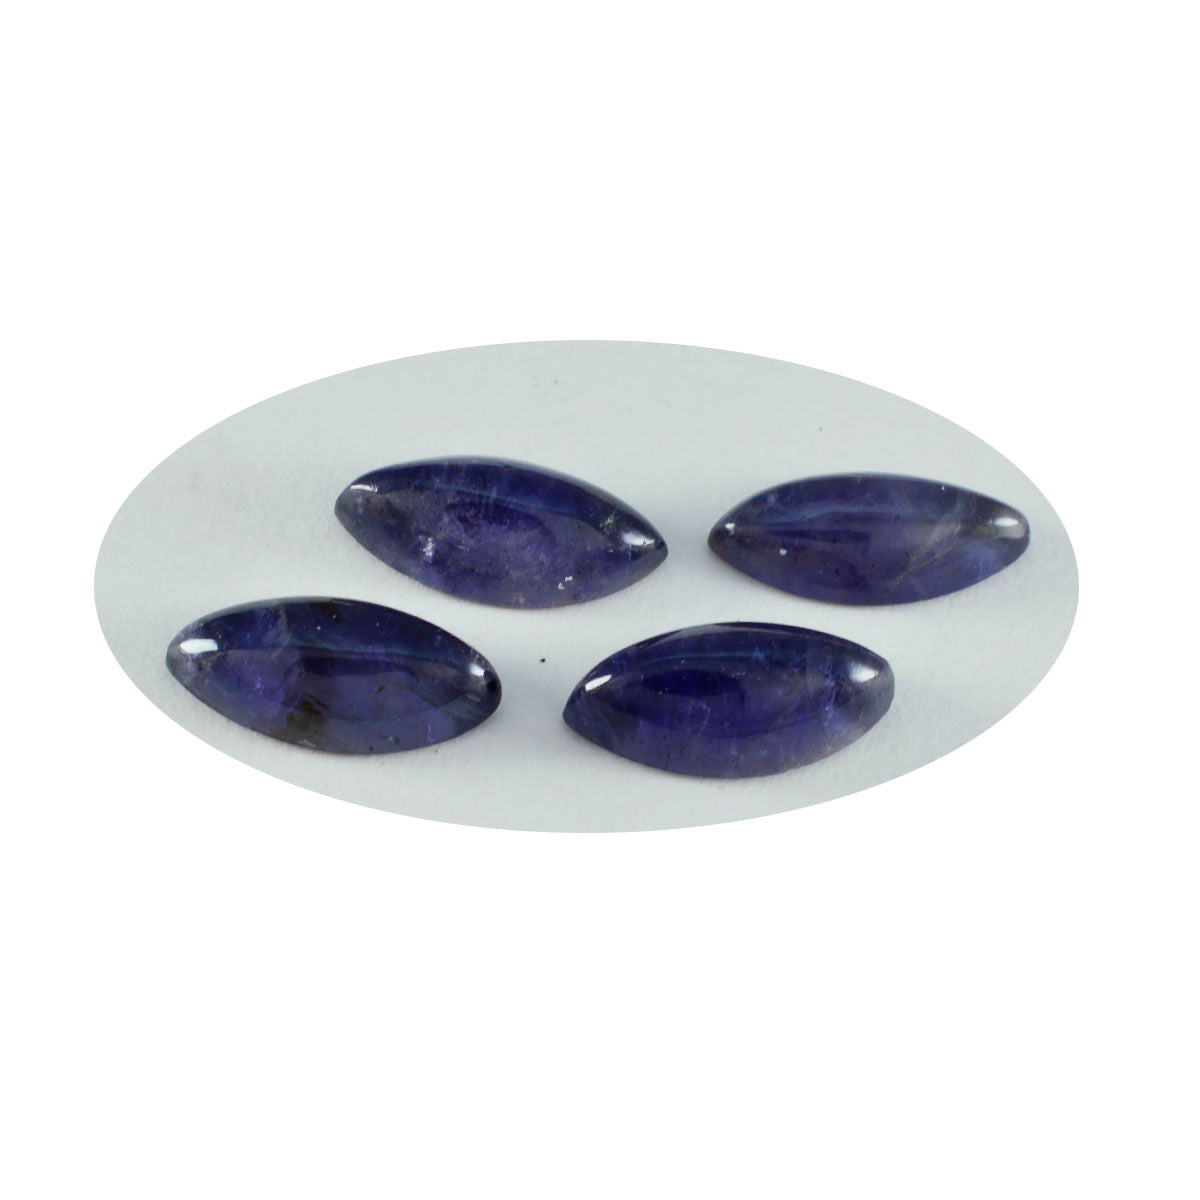 Riyogems, 1 pieza, cabujón de iolita azul, 6x12mm, forma de marquesa, gema suelta de hermosa calidad